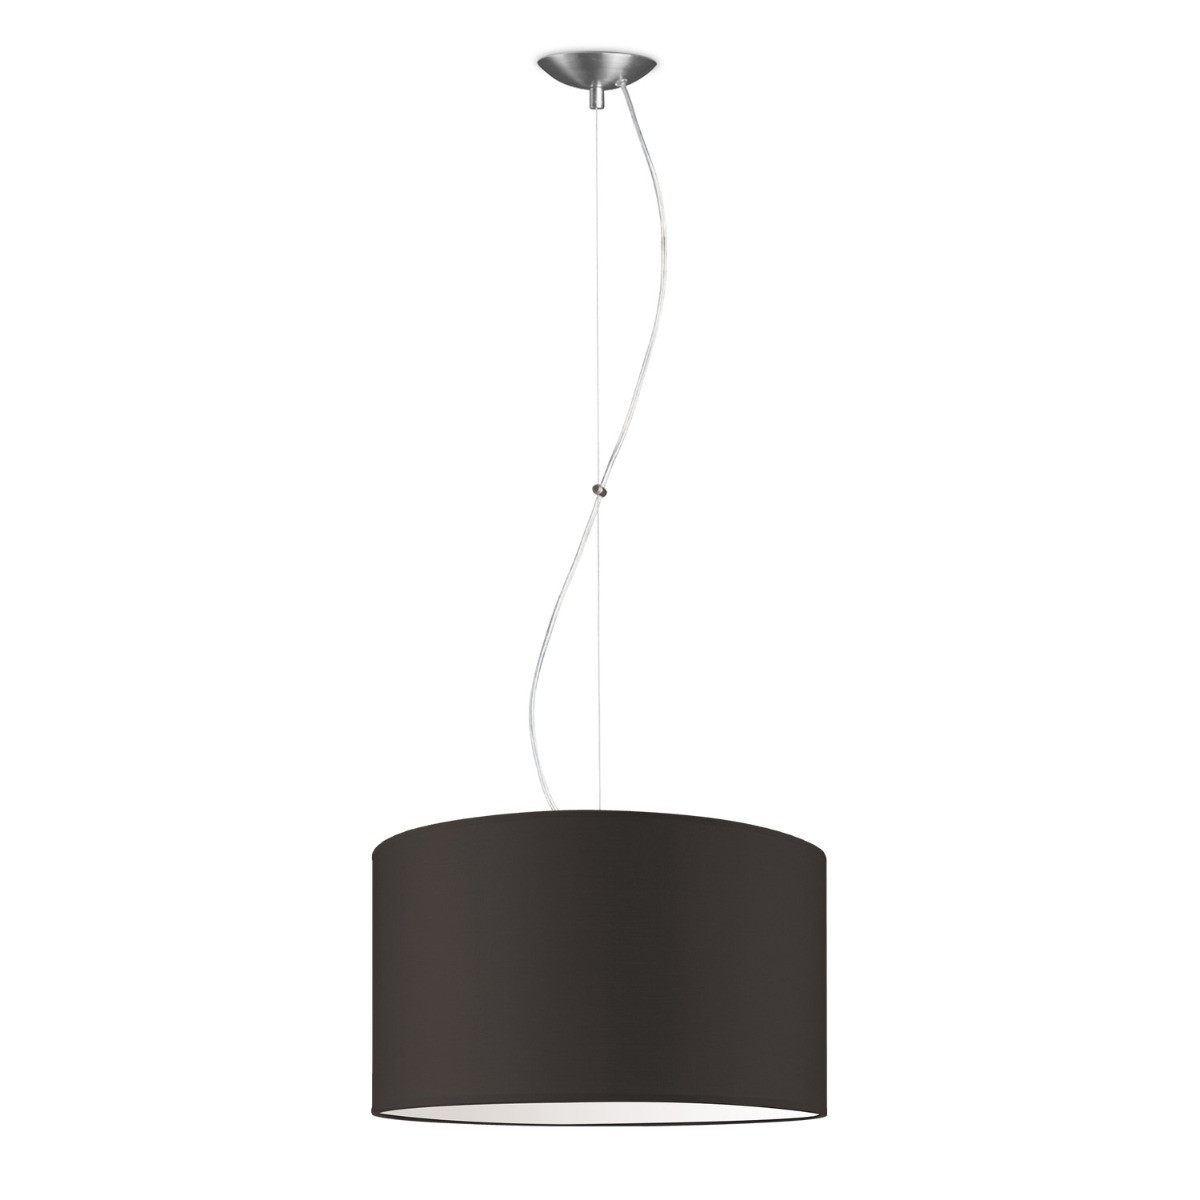 Light depot - hanglamp basic deluxe bling Ø 40 cm - bruin - Outlet